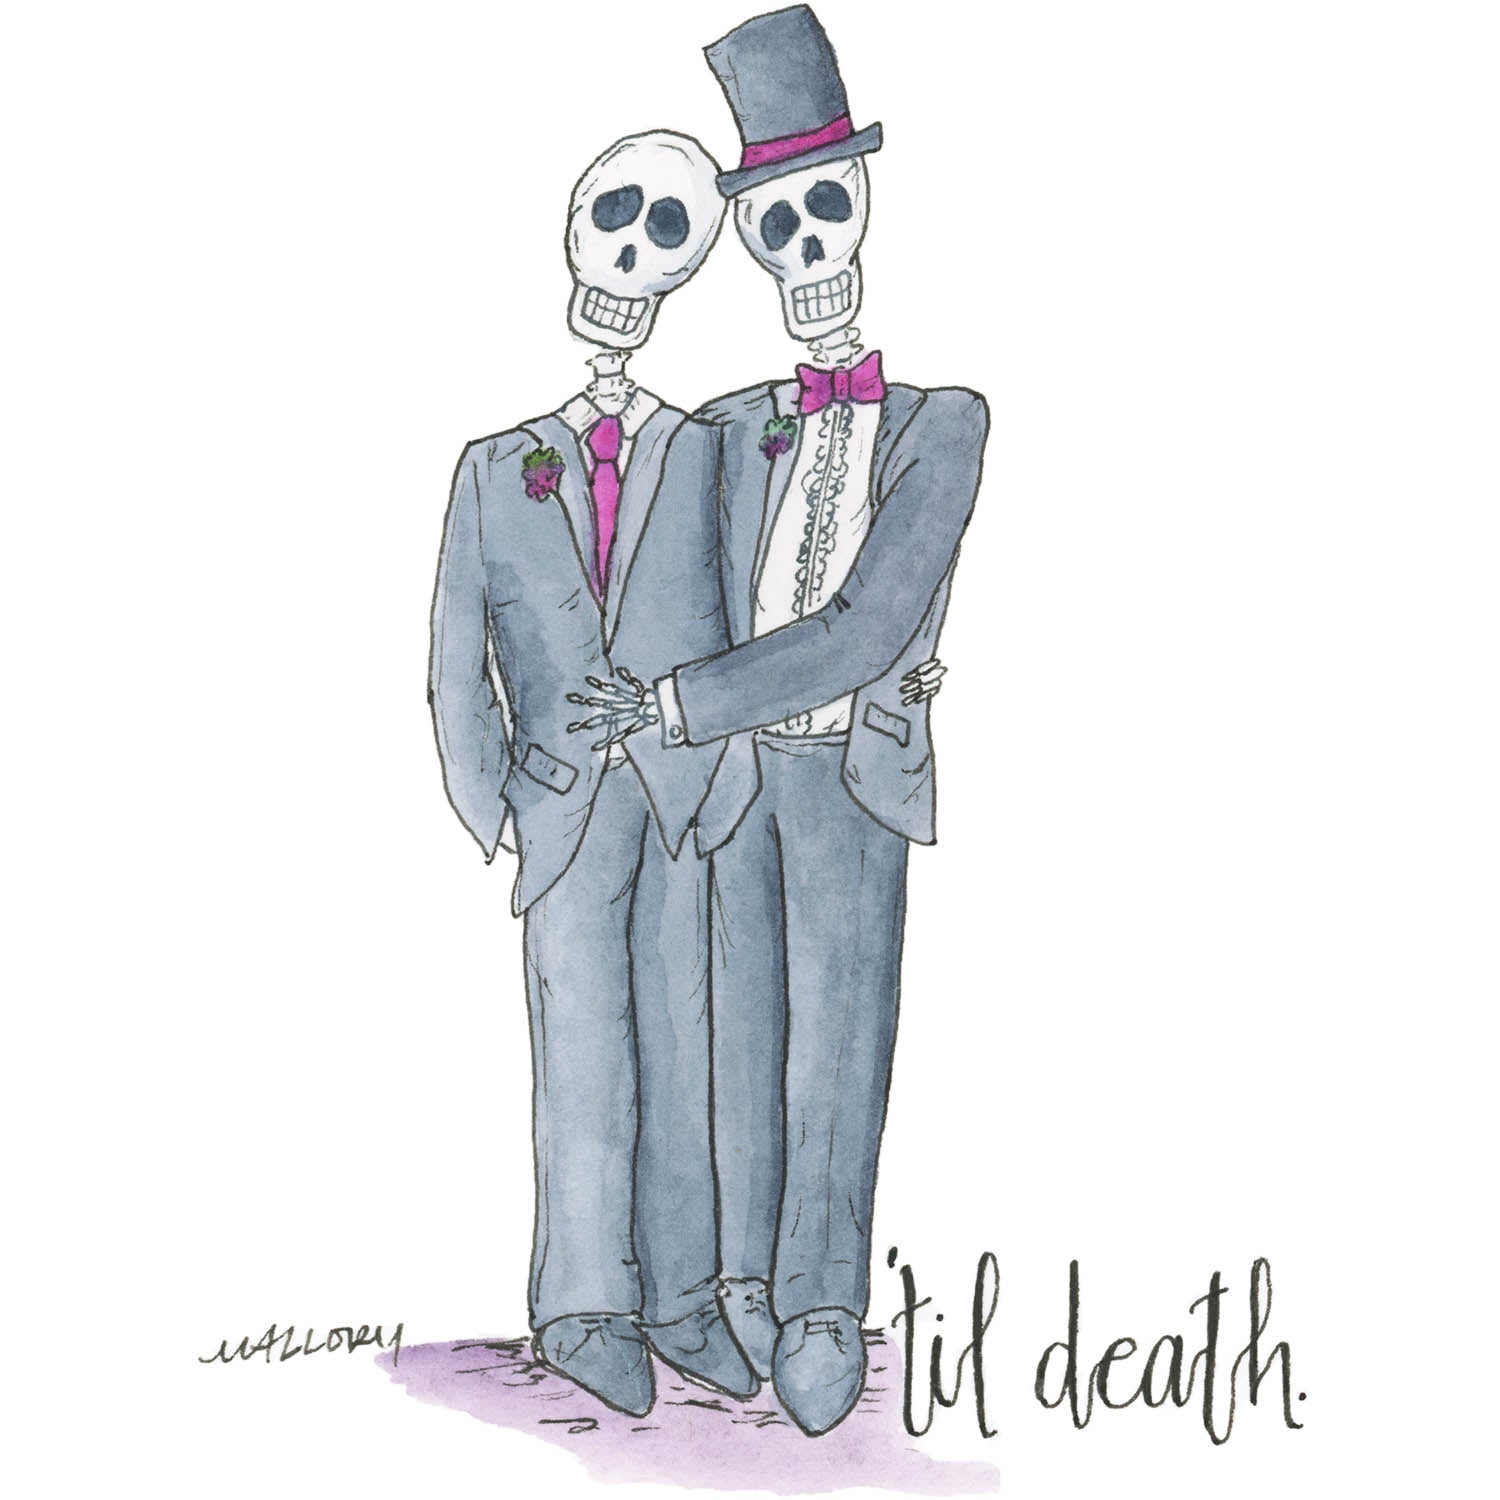 'Til Death Male Couple Wedding Card